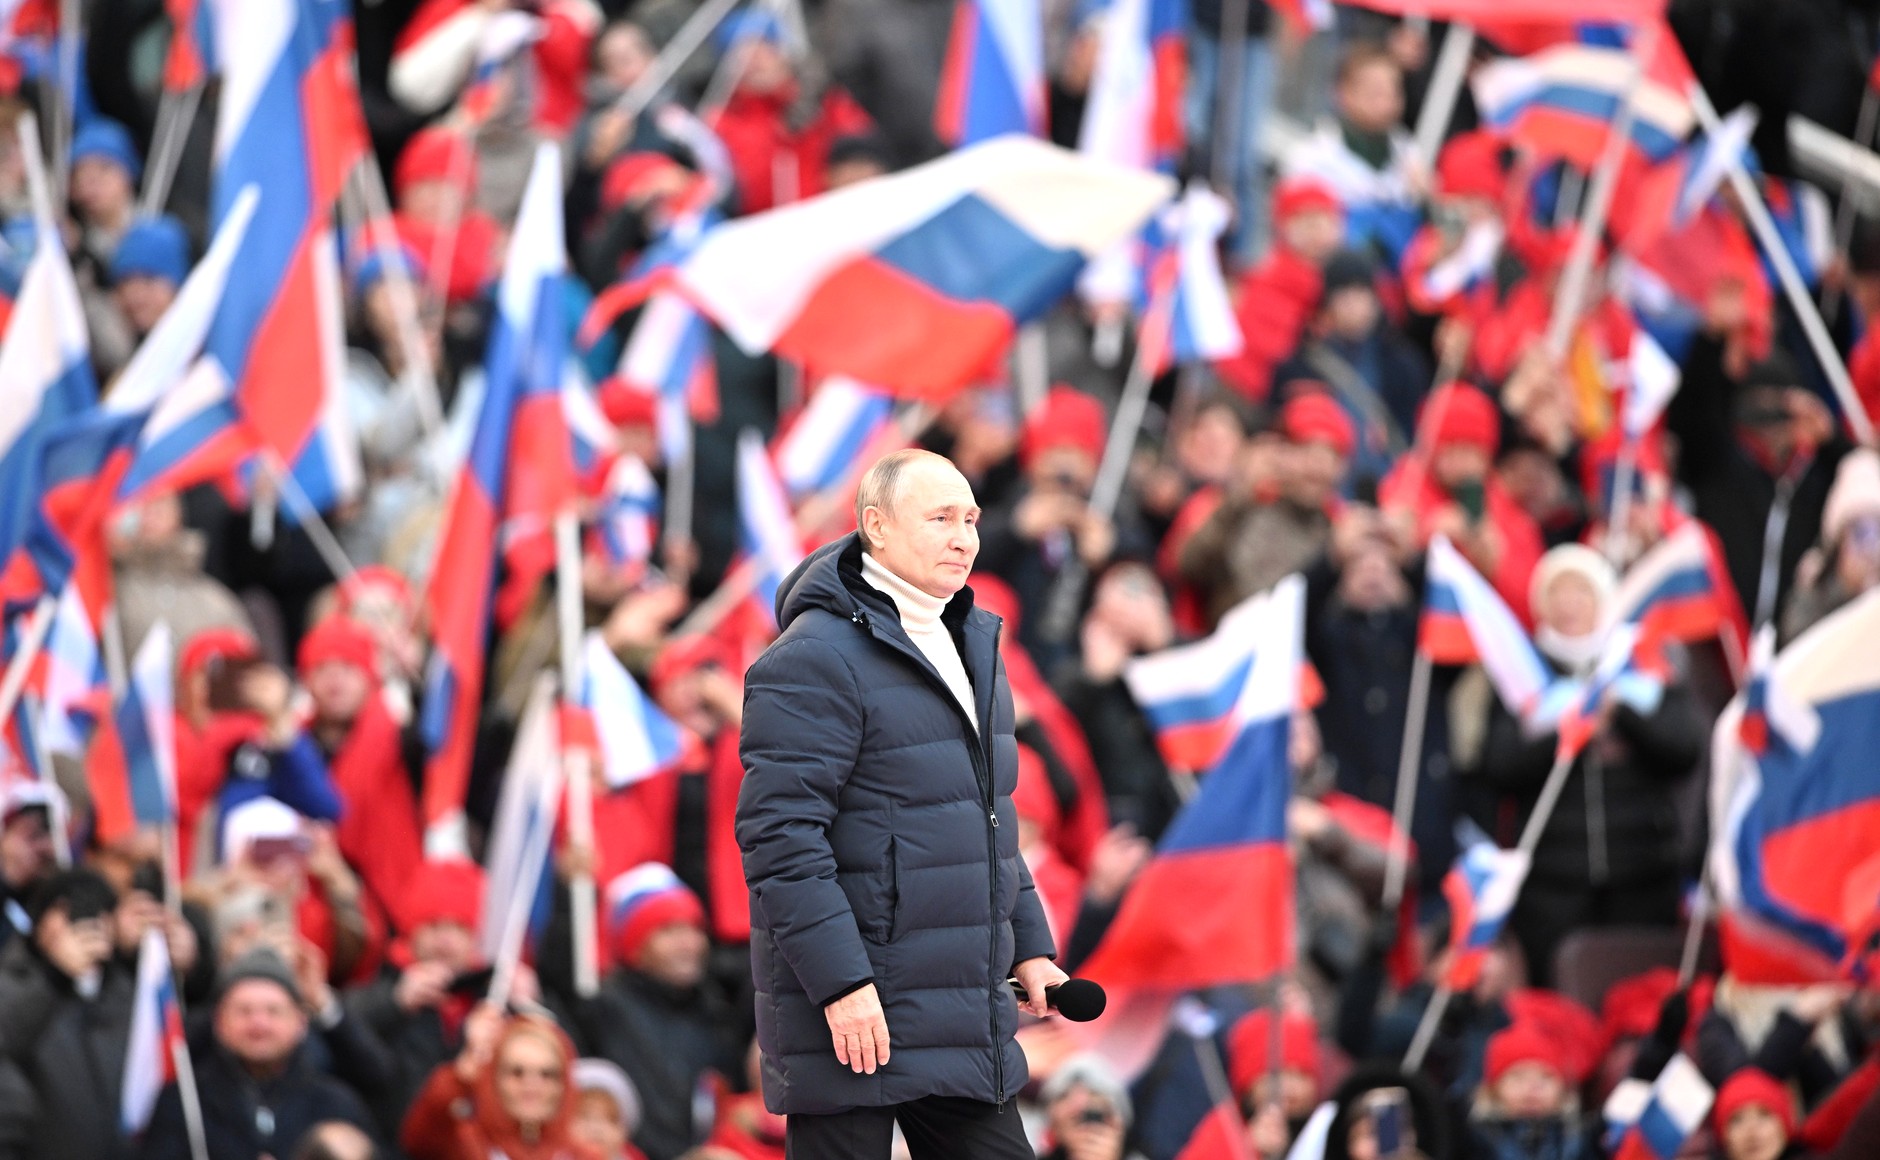 ФОМ: Работу Путина одобряют 82% россиян